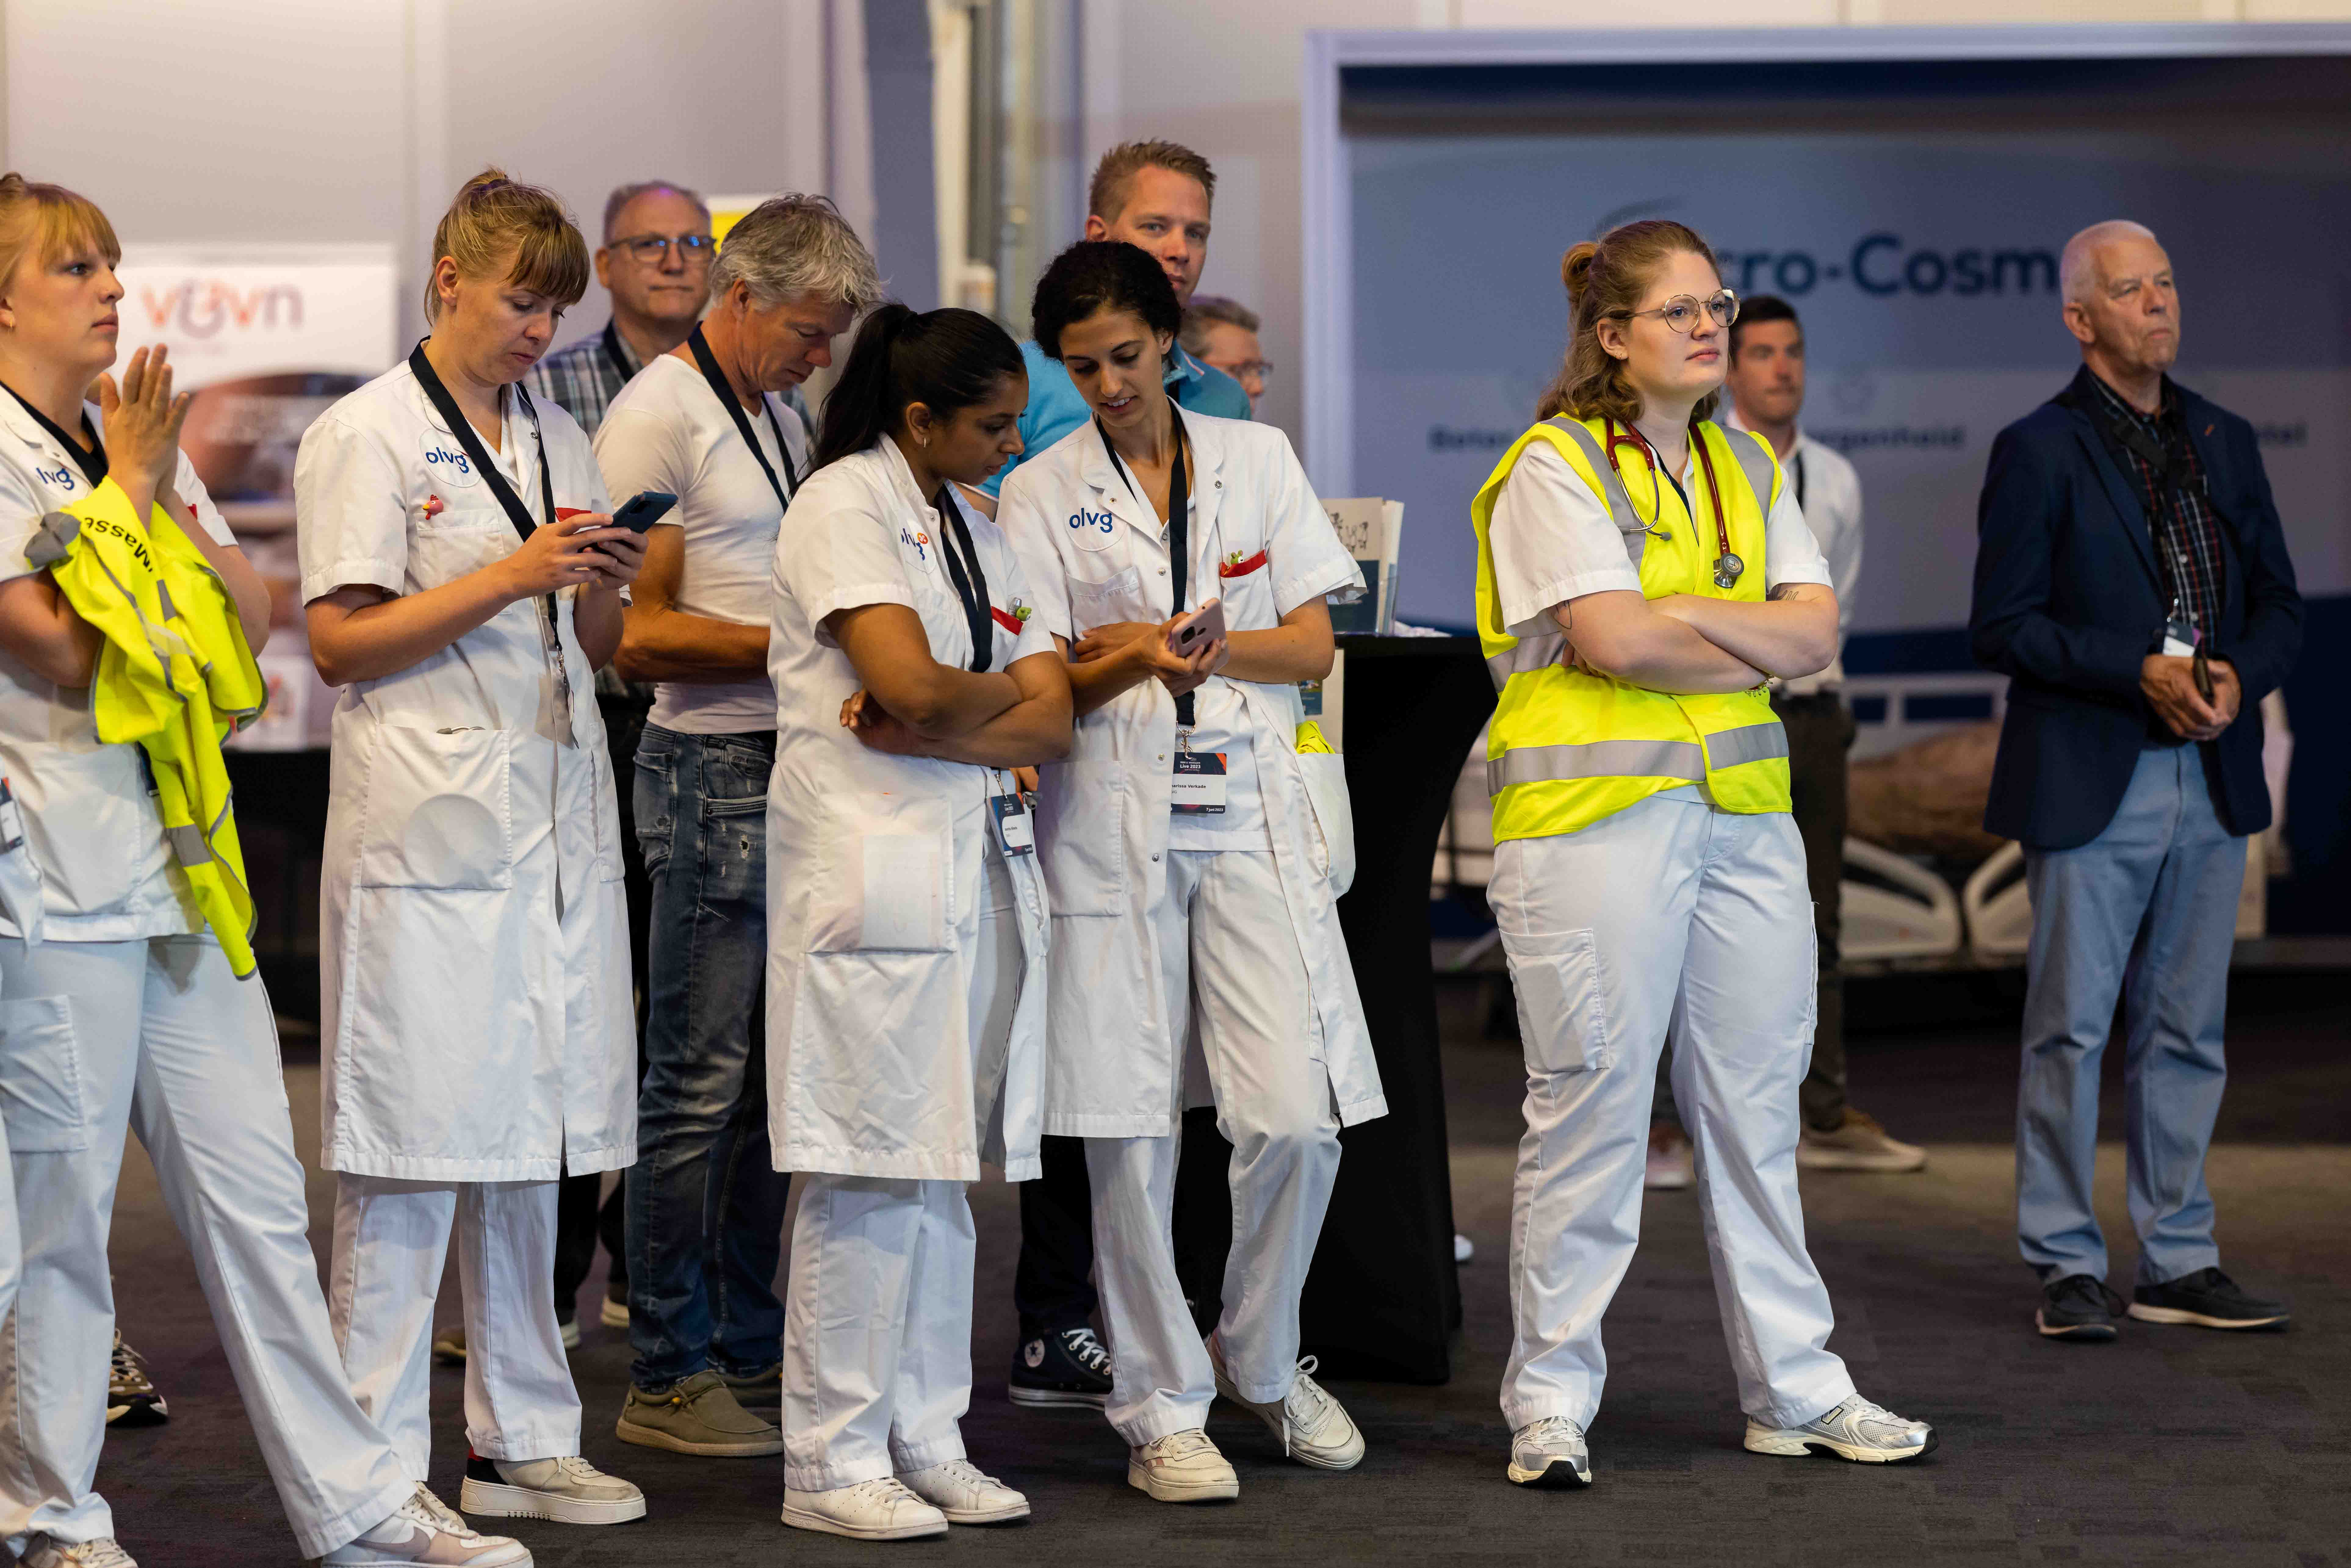 Een groep medische professionals in witte uniformen en één persoon in een geel veiligheidshesje staan aandachtig te kijken naar iets buiten beeld op een beurs of evenement, met bezoekers en stands op de achtergrond.